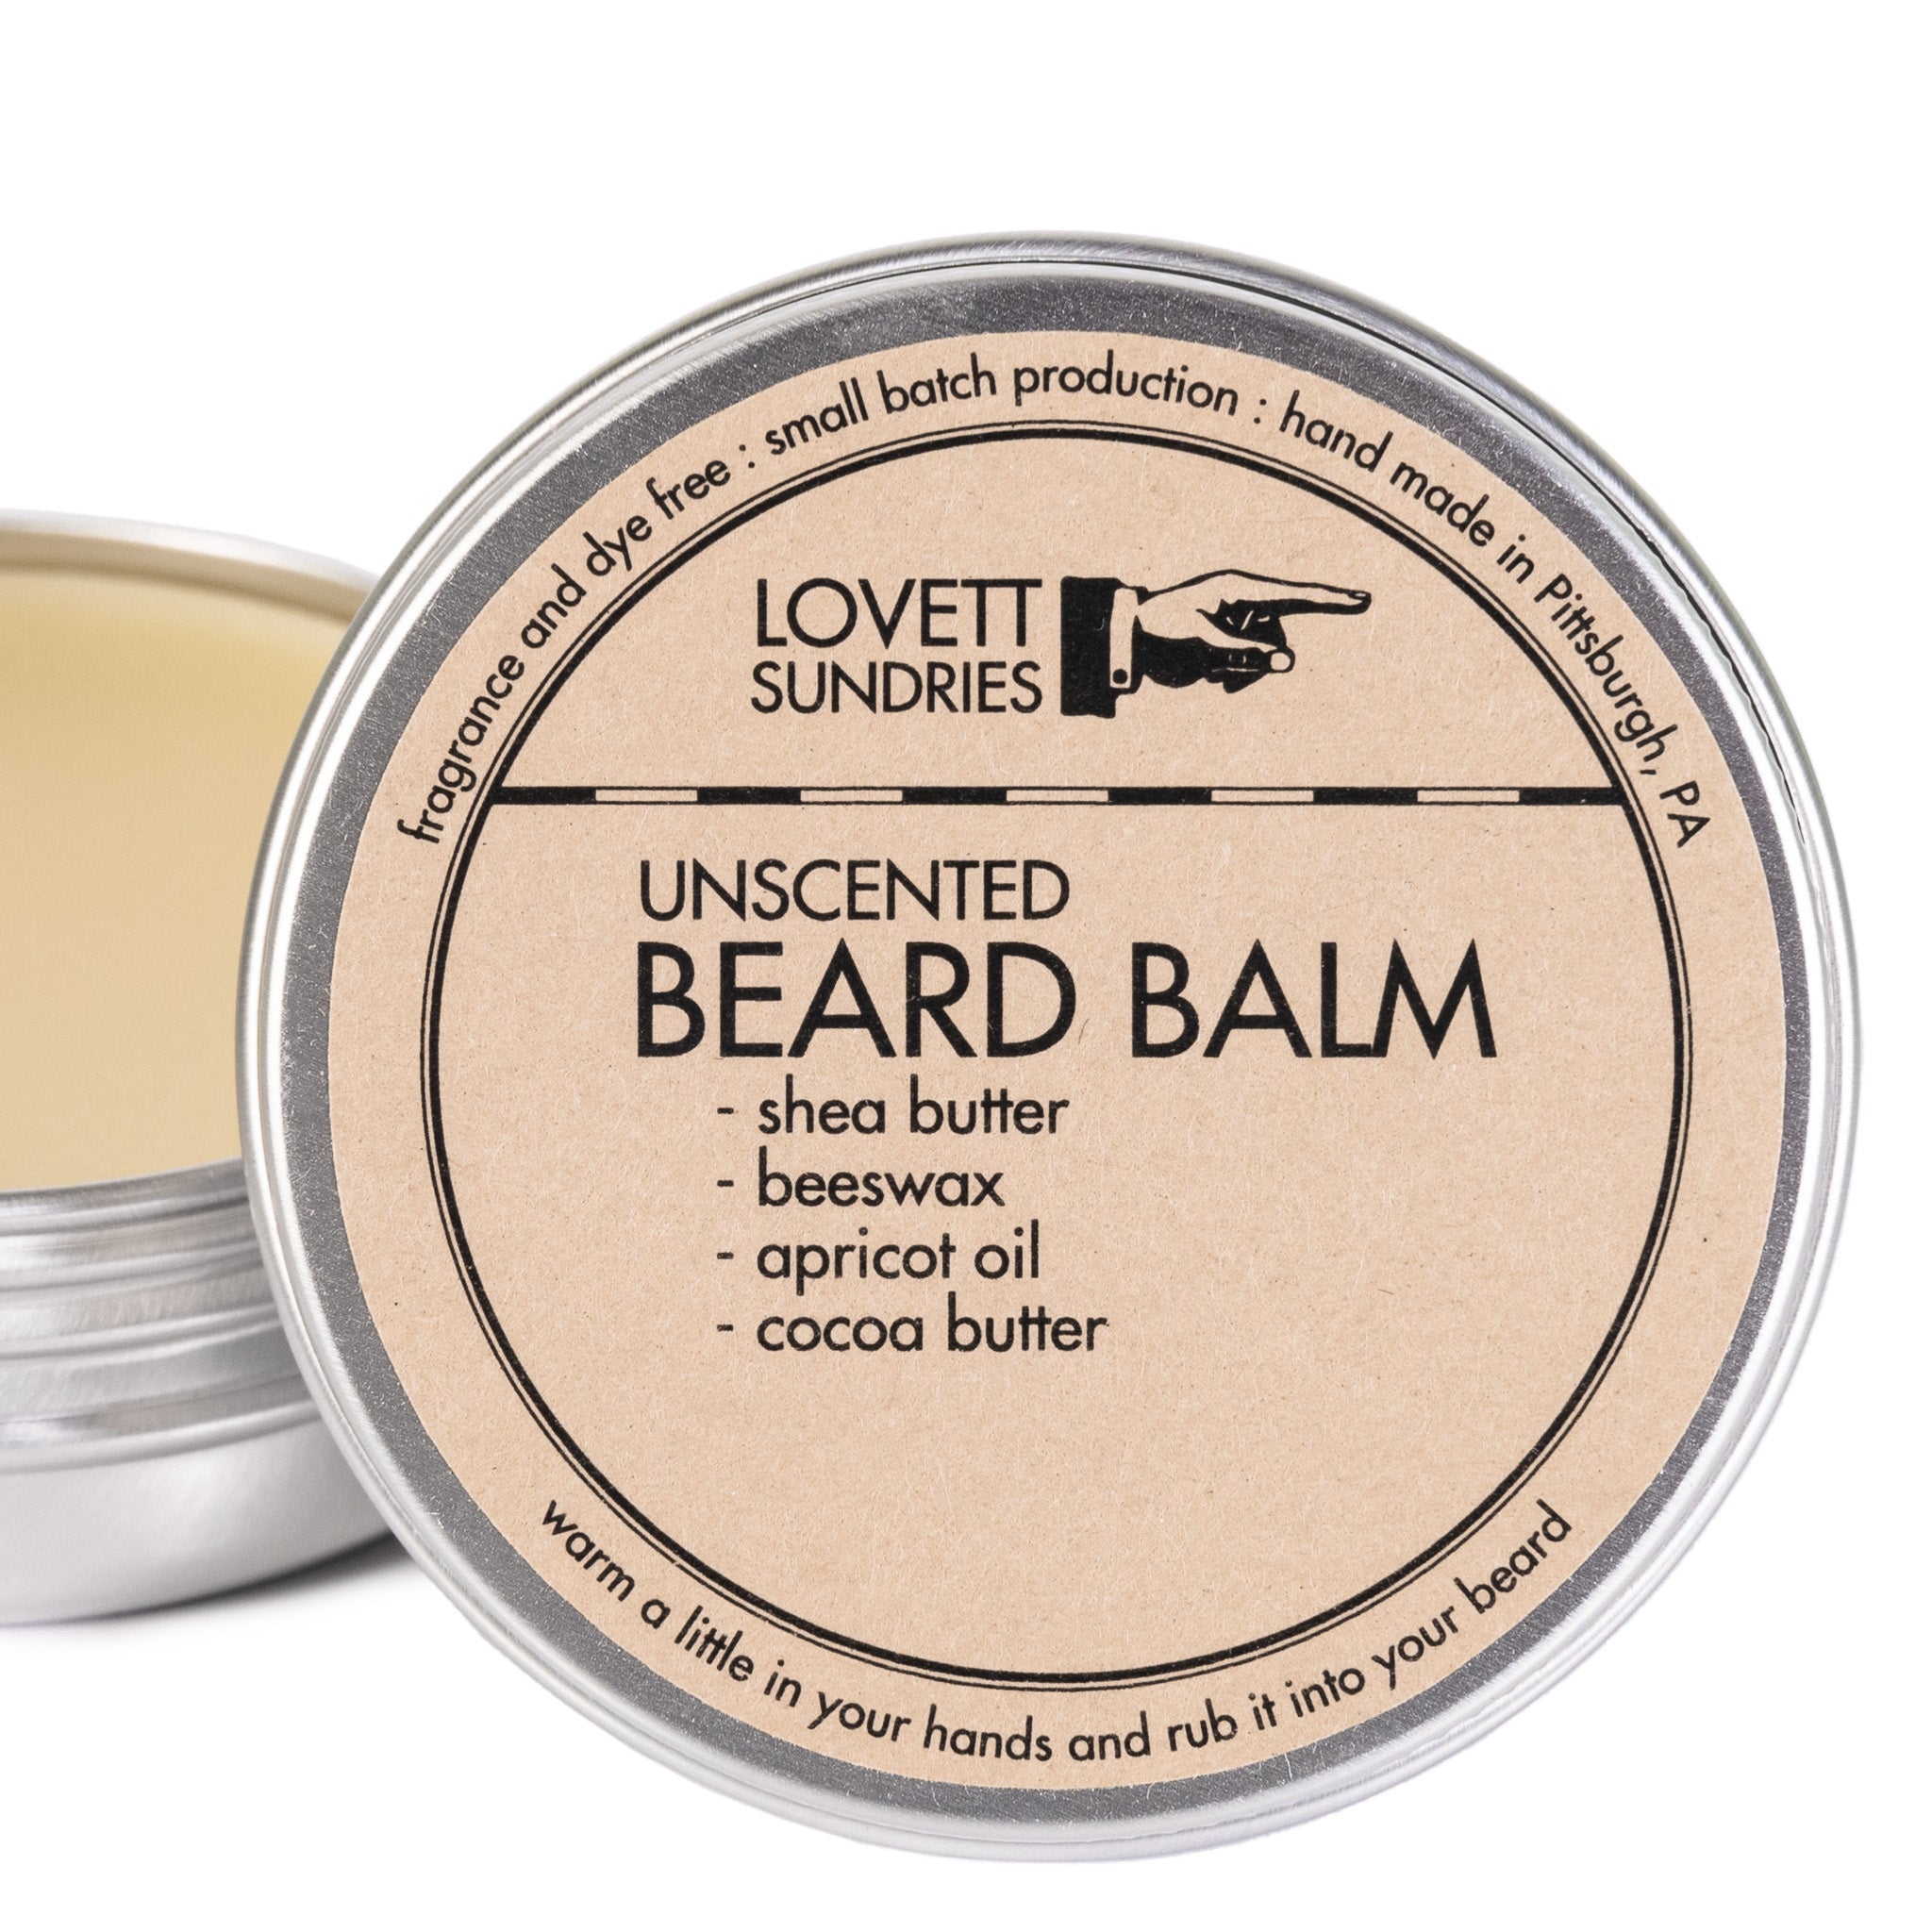 a tin of unscented natural beard balm